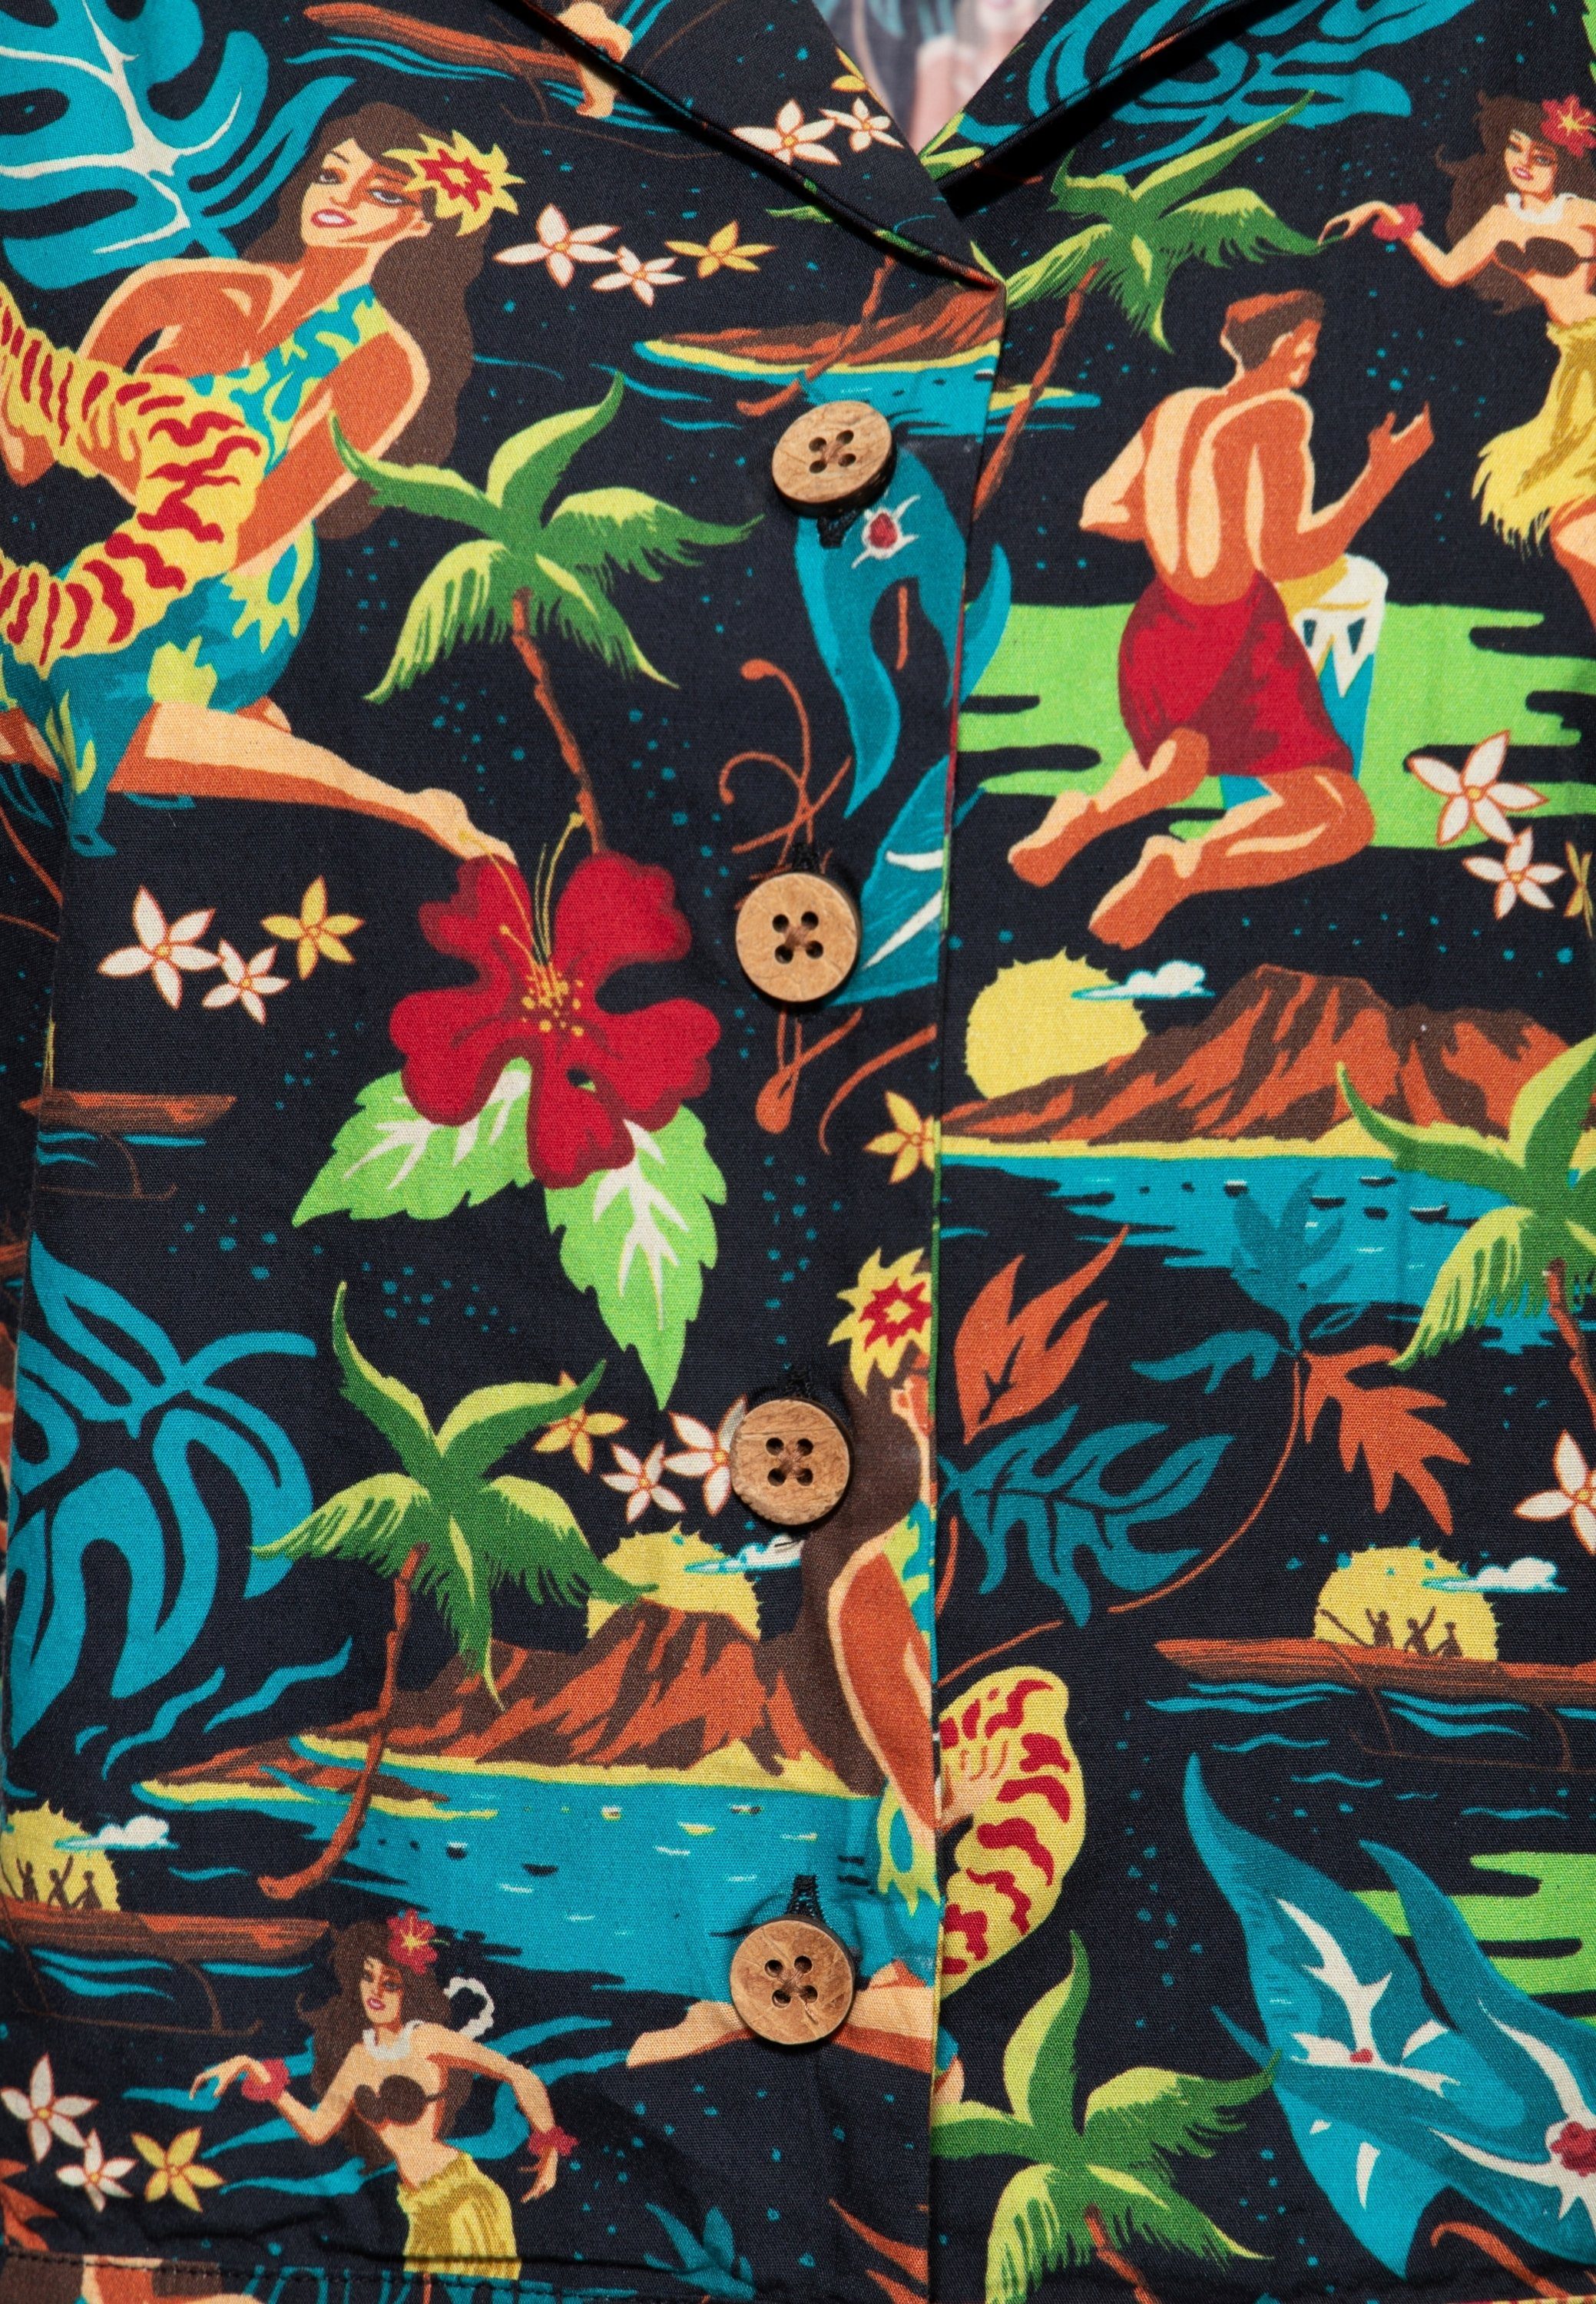 im QueenKerosin Hemdbluse Hawaiianischen schwarz Design